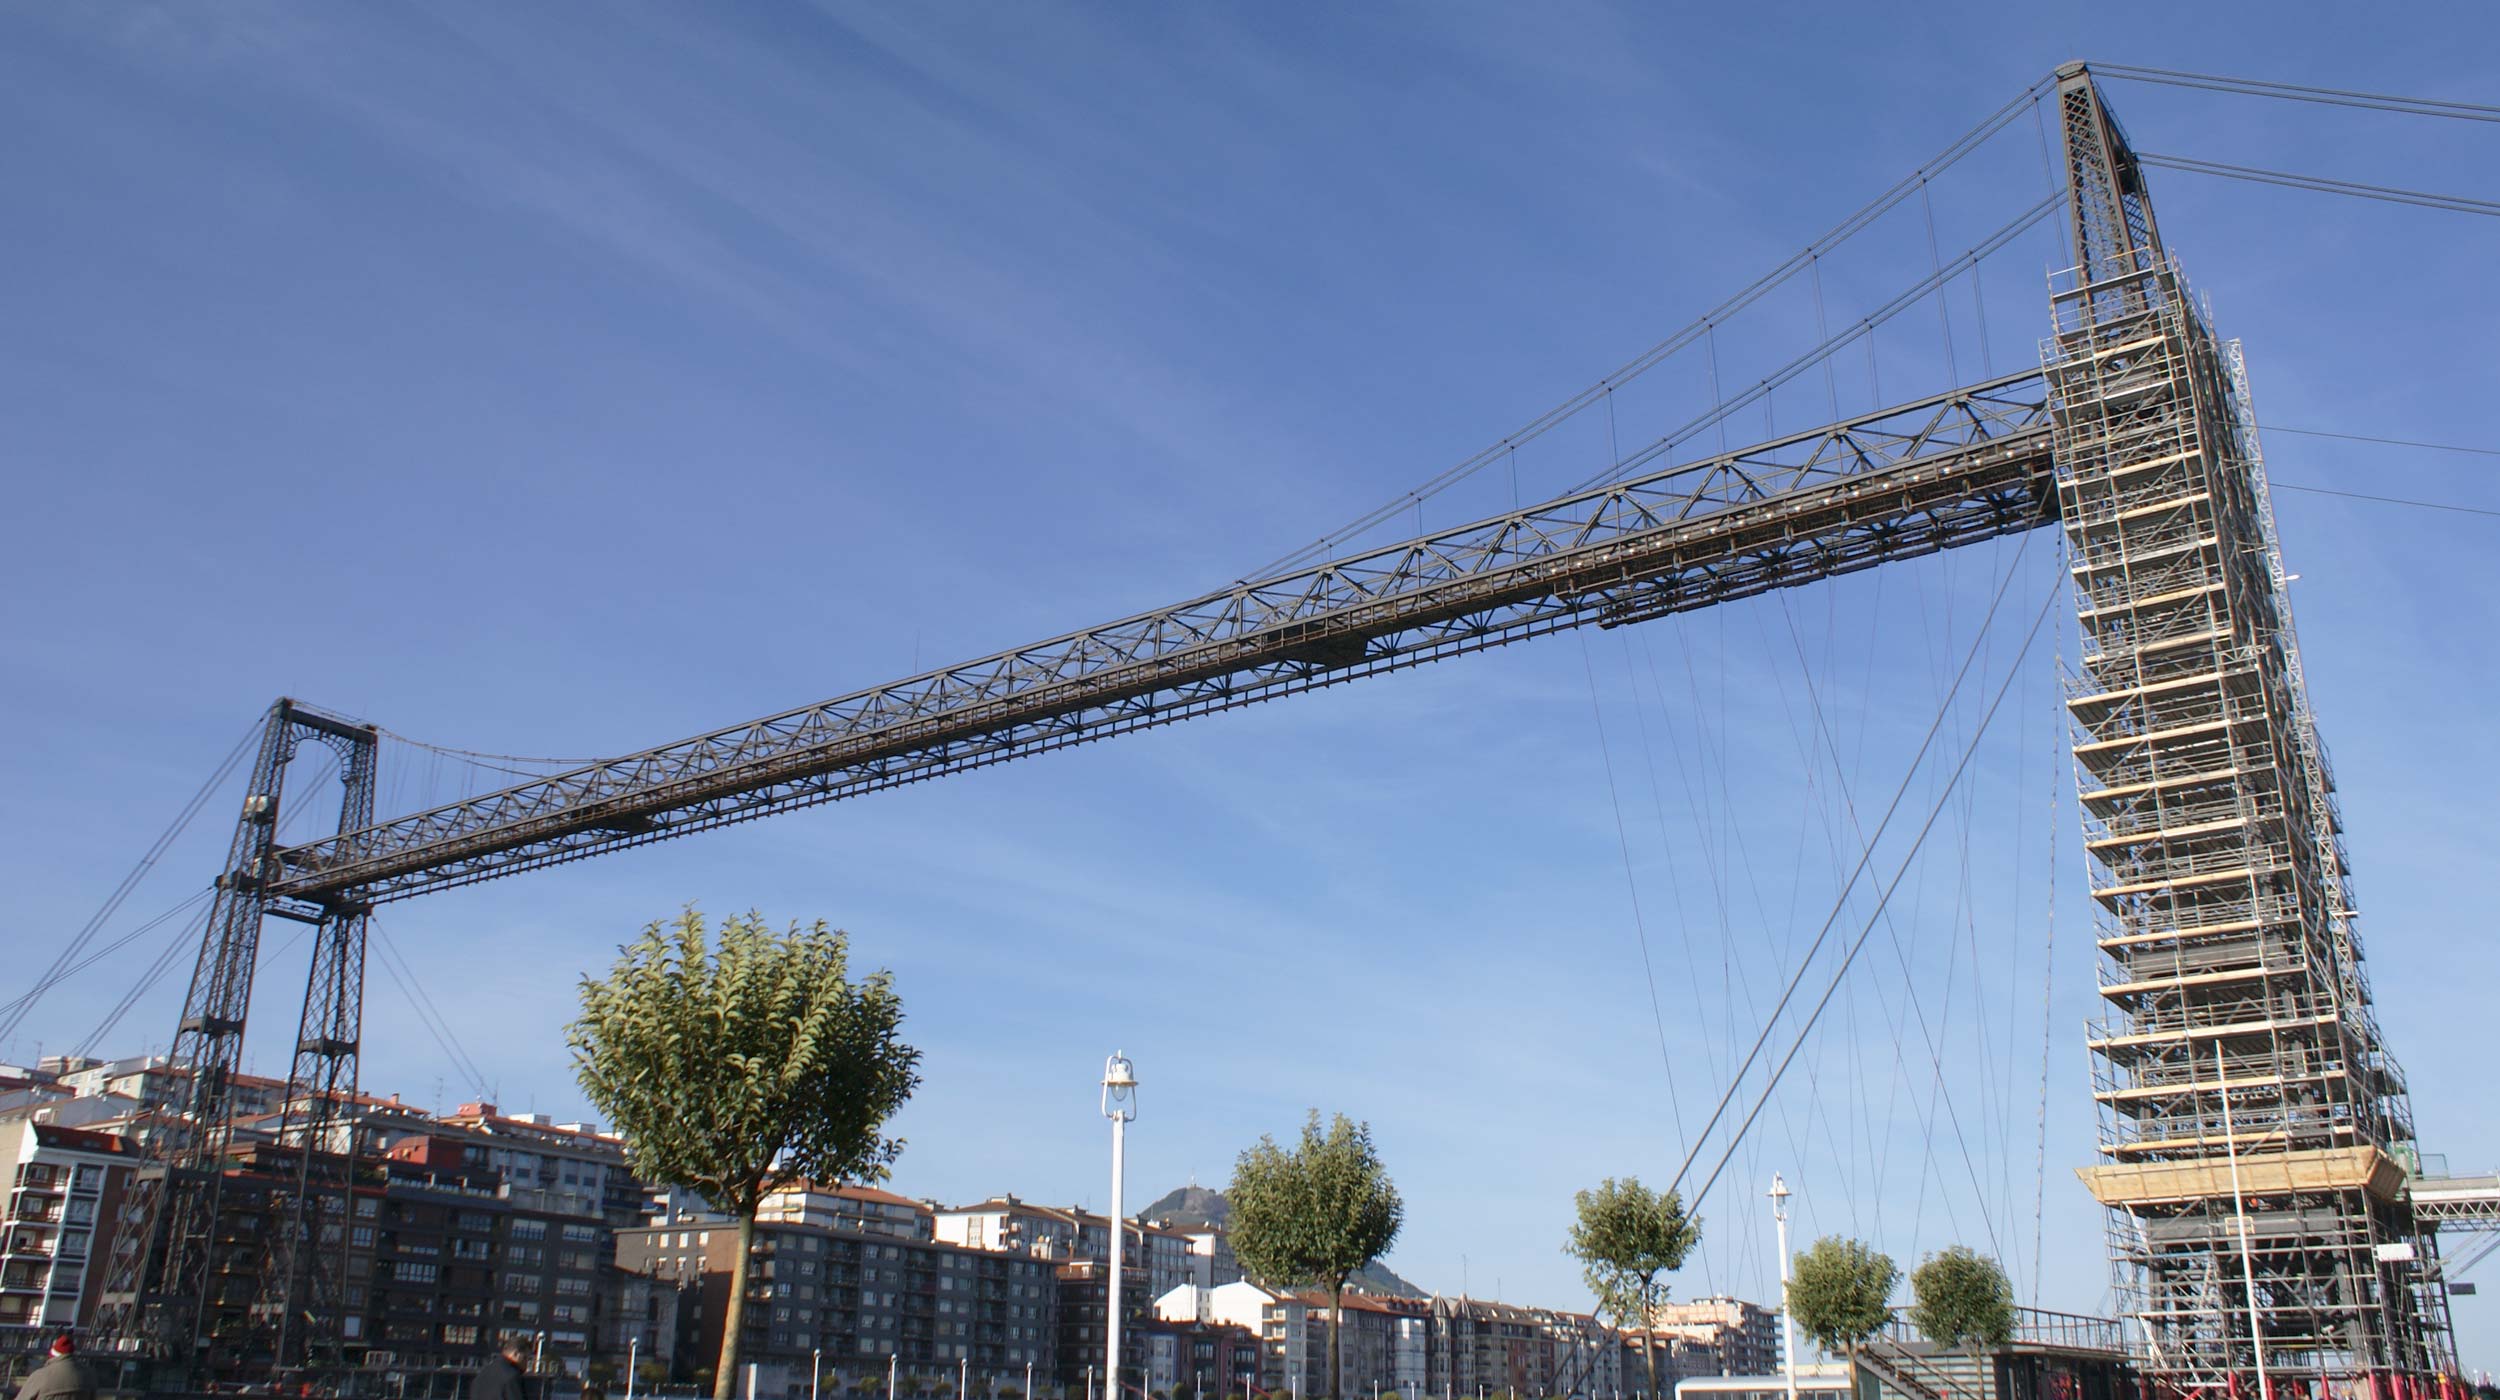 Gondolowy Most Biskajski, wpisany w 2006 roku na listę światowego dziedzictwa UNESCO, jest symbolem rewolucji przemysłowej z drugiej połowy XIX wieku.